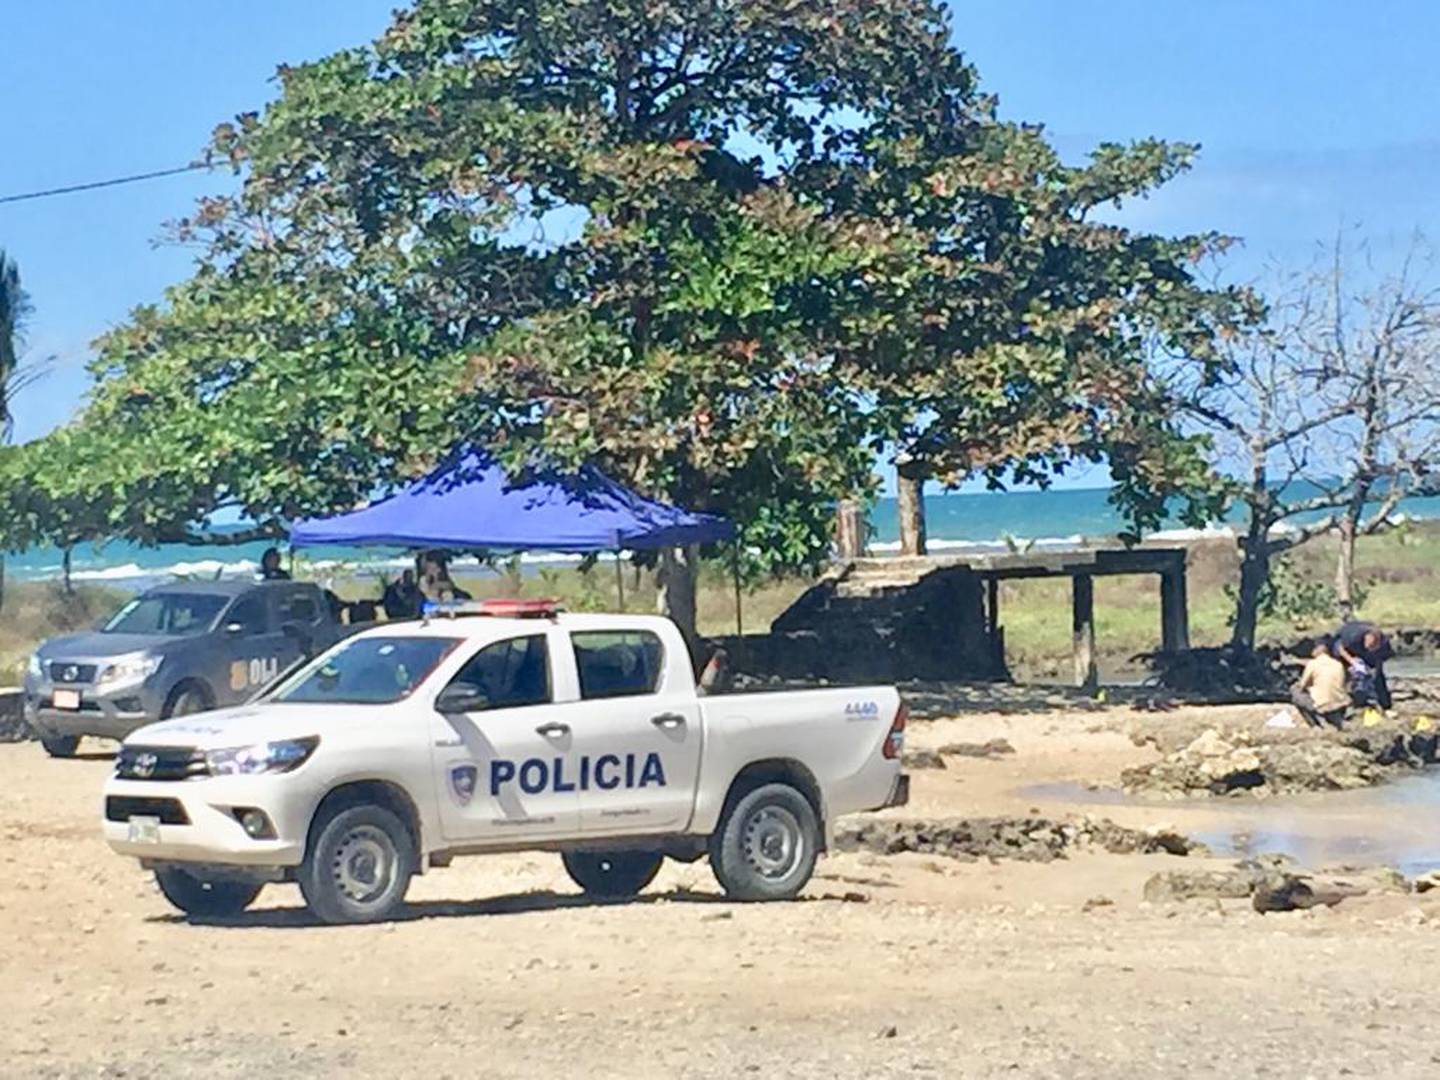 El OIJ y la Fuerza Pública se apersonaron al sitio para levantar el cuerpo y buscar pistas que ayuden a dilucidar el motivo del tiroteo. Foto: Raúl Cascante.